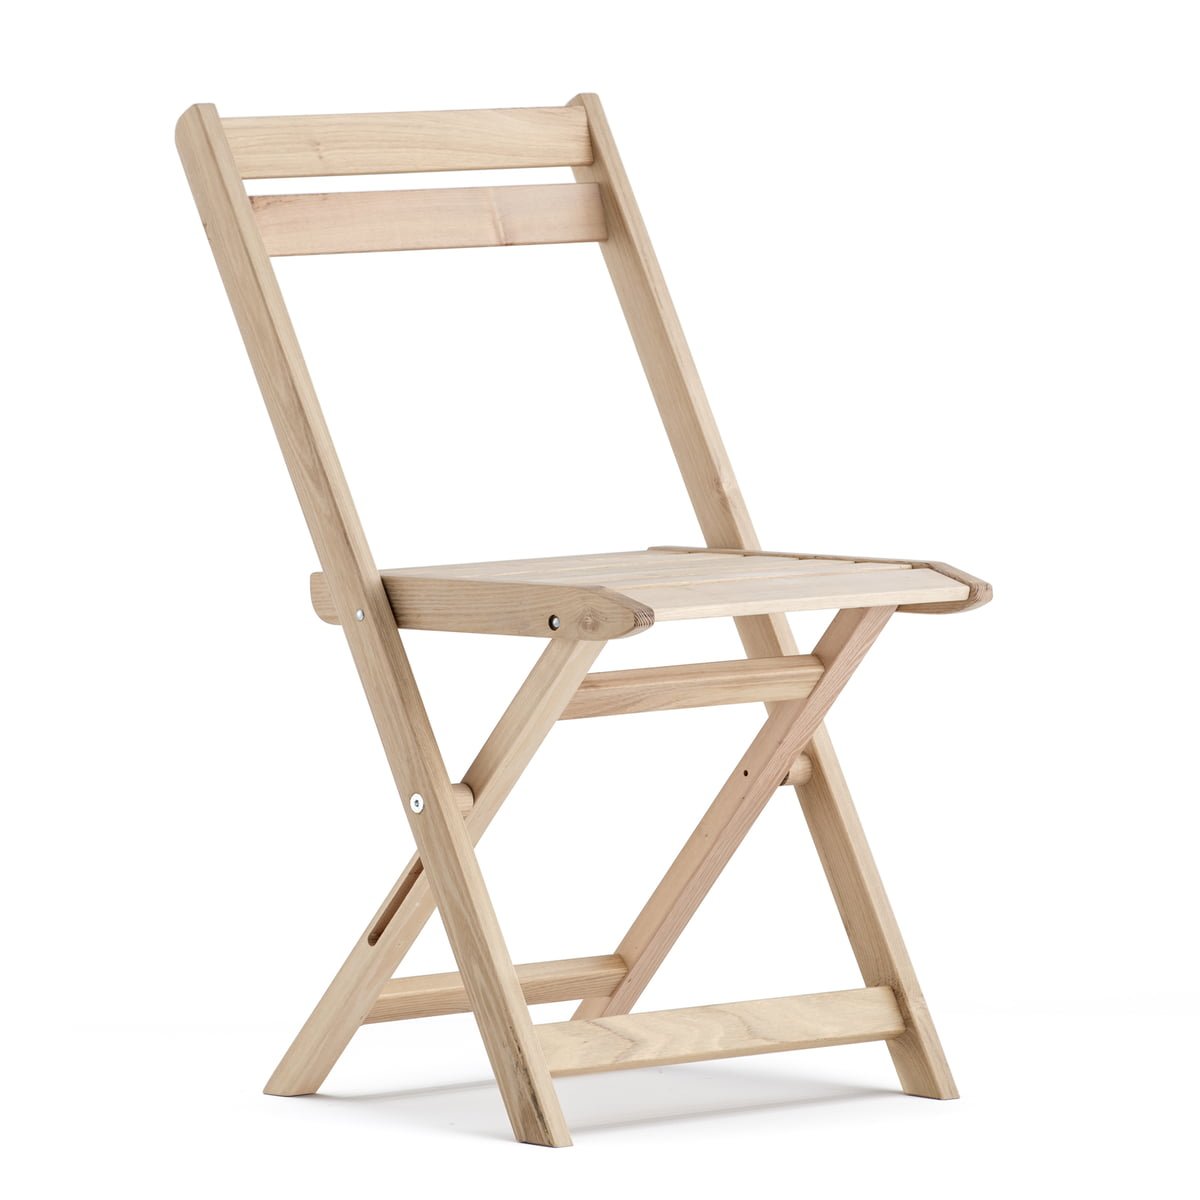 Недорогие складные стулья. Складной стул хофф. Стул икеа складной деревянный со спинкой. Стул складной Hoff дерево. Складные деревянные стулья хофф.